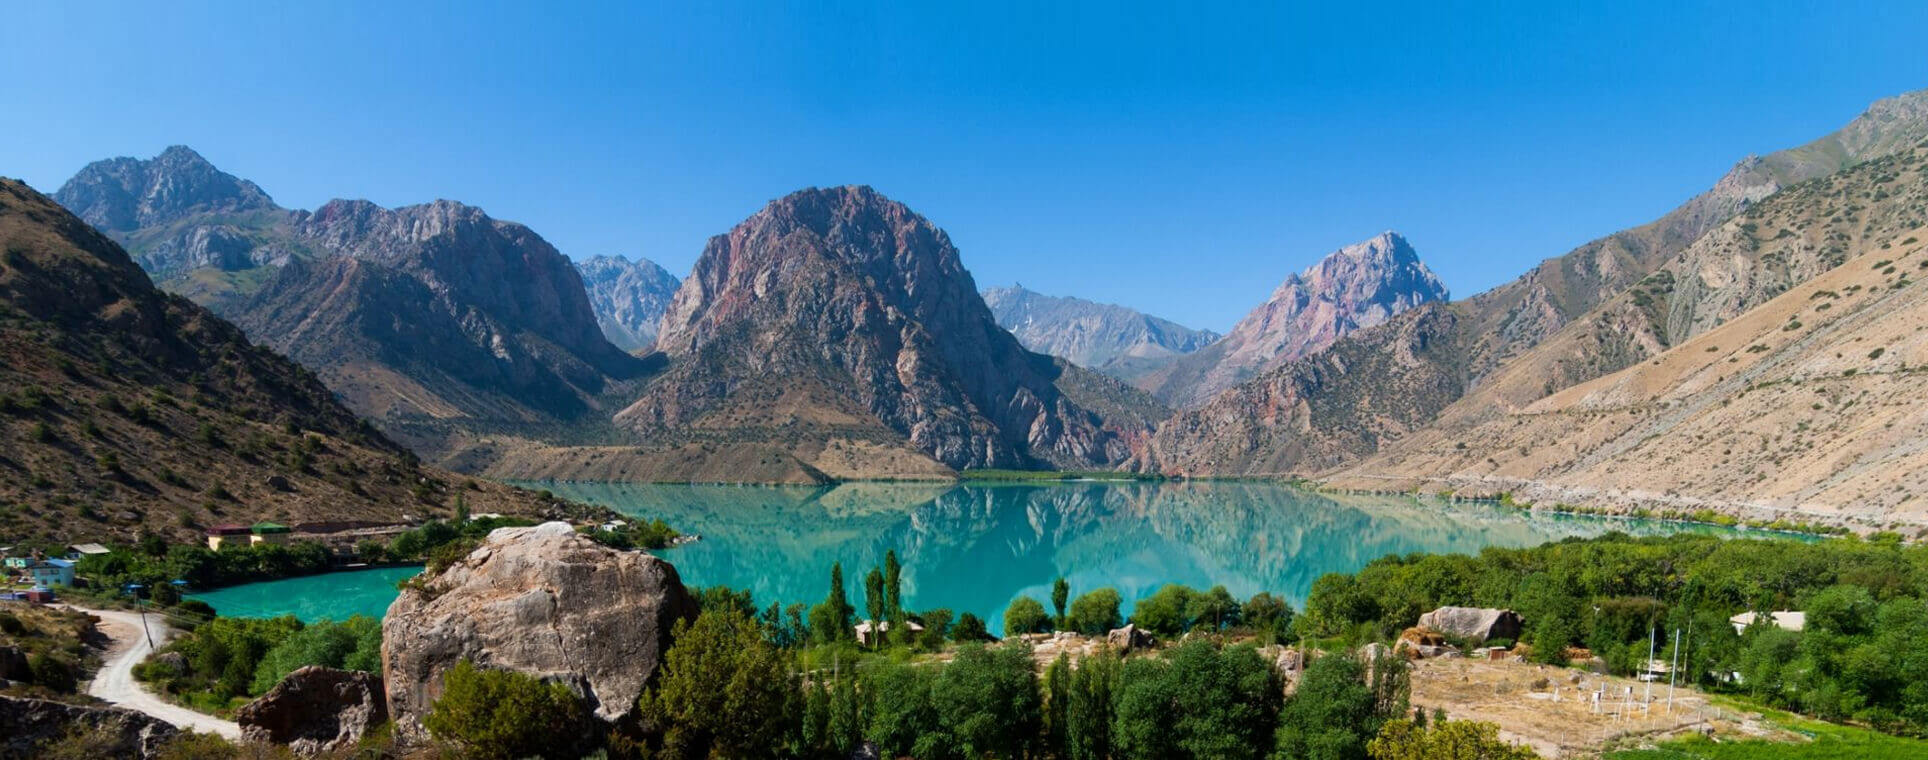 Tajikistan: A Tale Of The Pamirs!